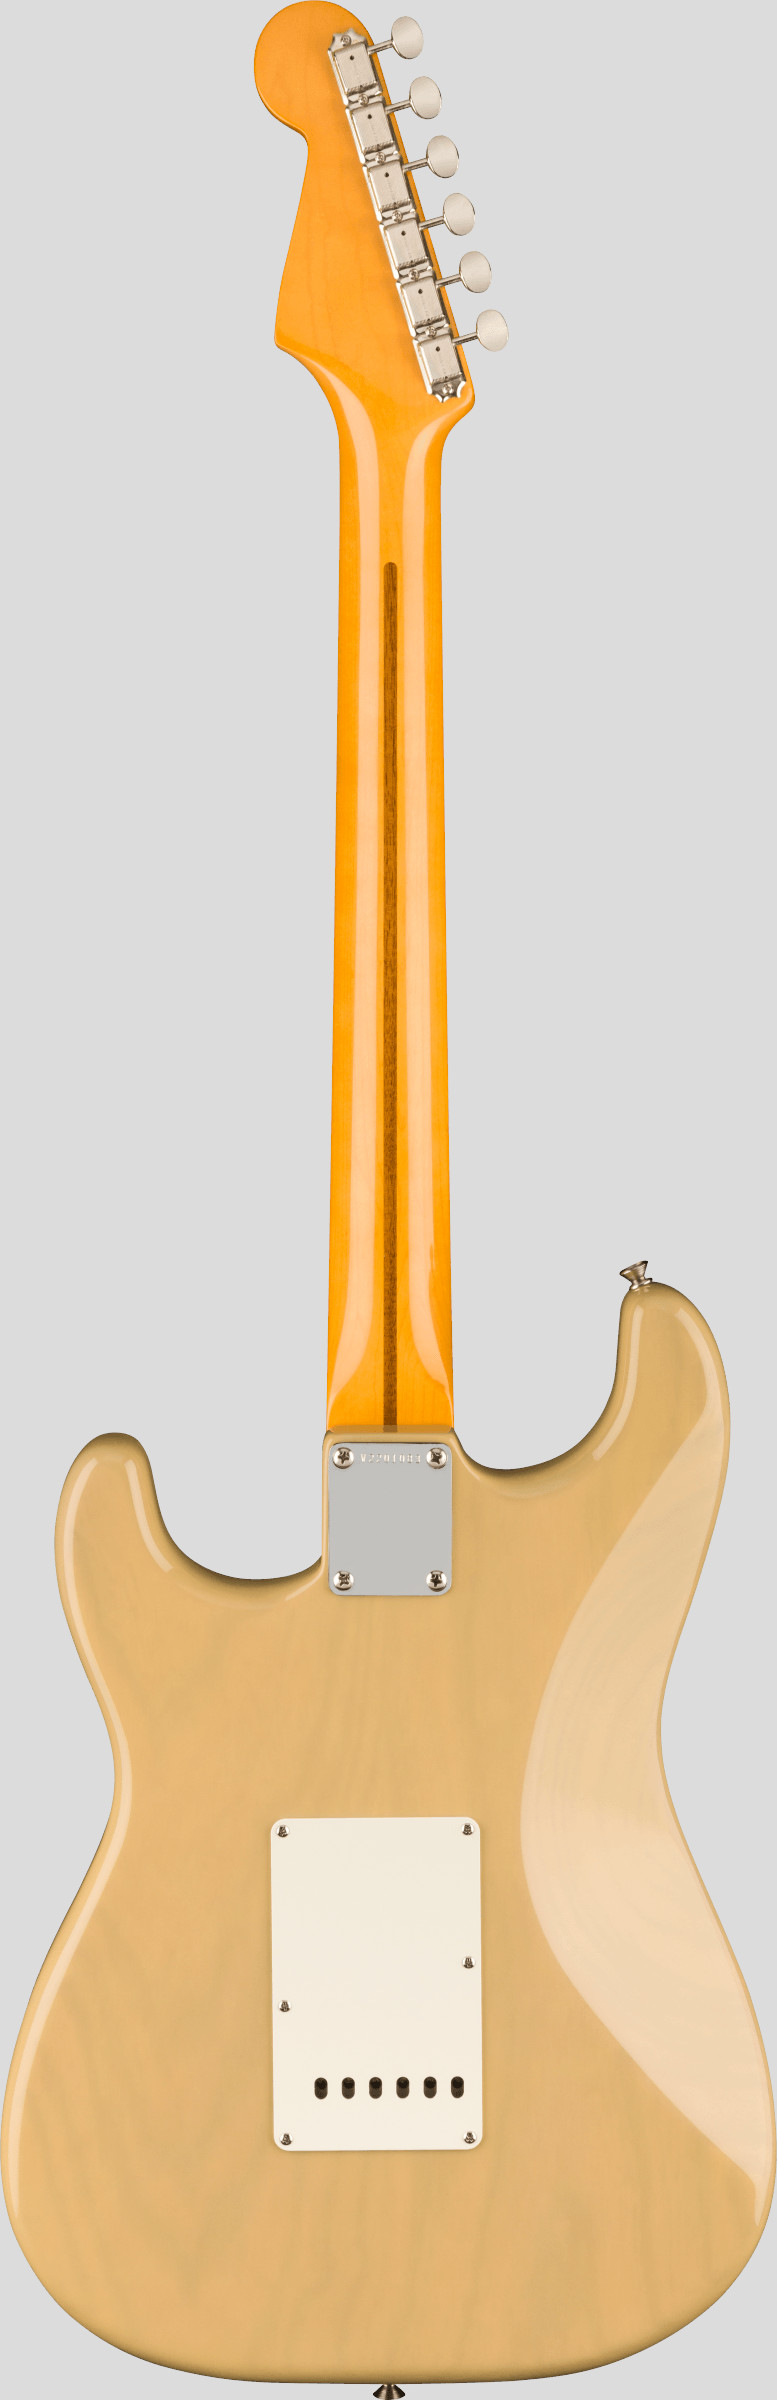 Fender American Vintage II 1957 Stratocaster Vintage Blonde 2